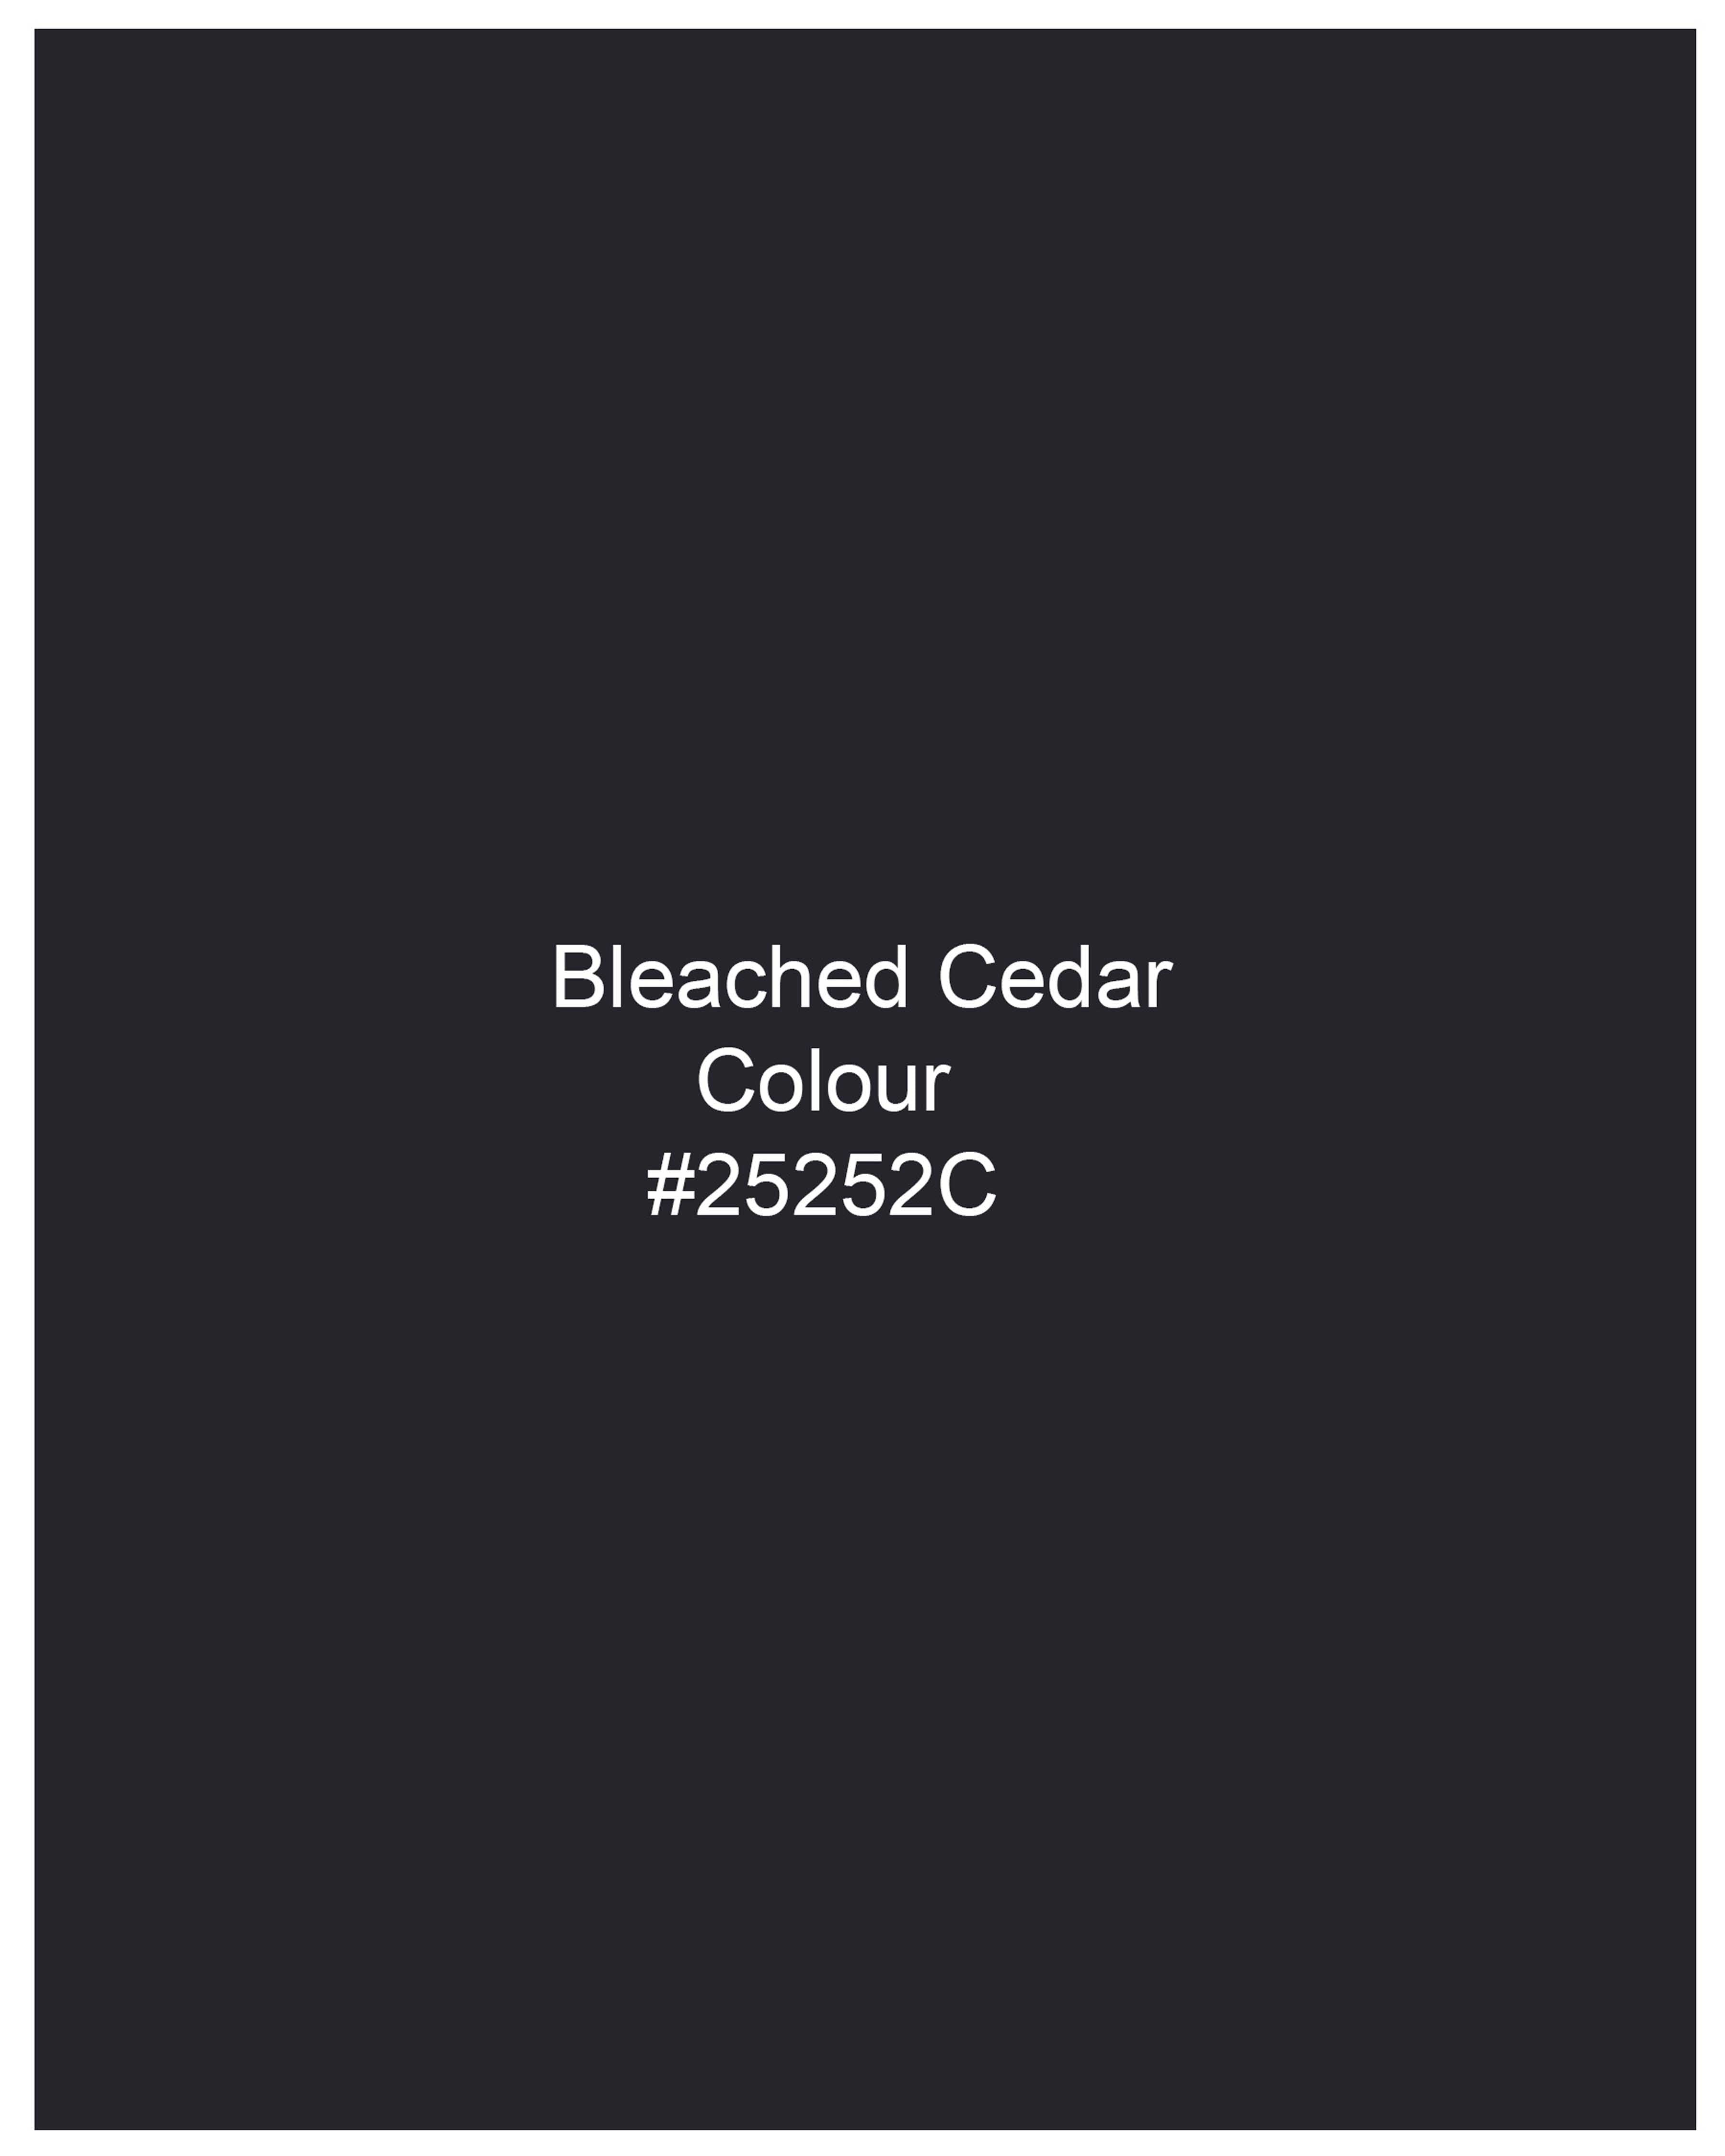 Bleached Cedar Blue Pant T2051-28, T2051-30, T2051-32, T2051-34, T2051-36, T2051-38, T2051-40, T2051-42, T2051-44